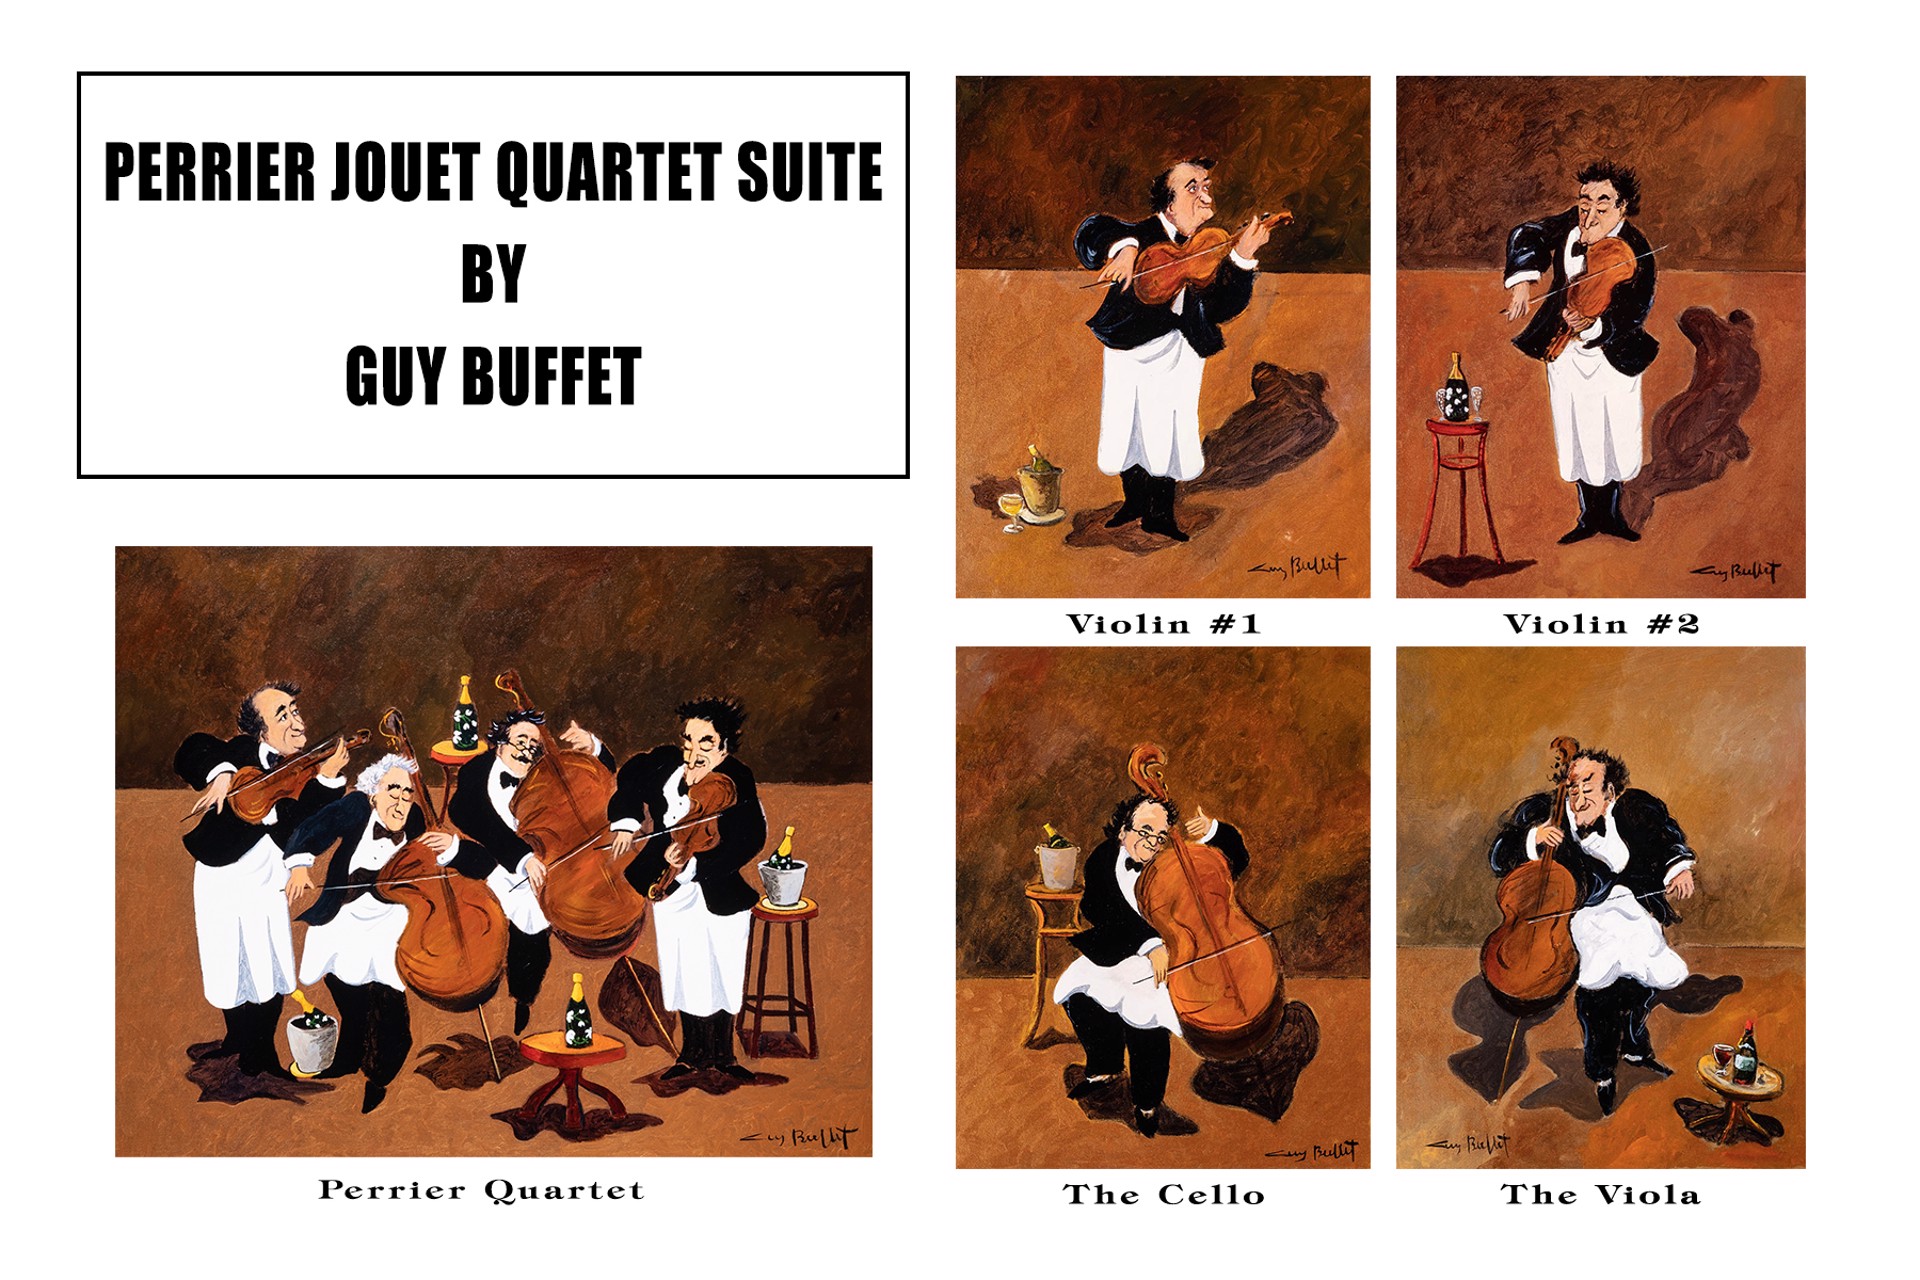 Perrier Jouet Quartet Suite - The Cello by Guy Buffet